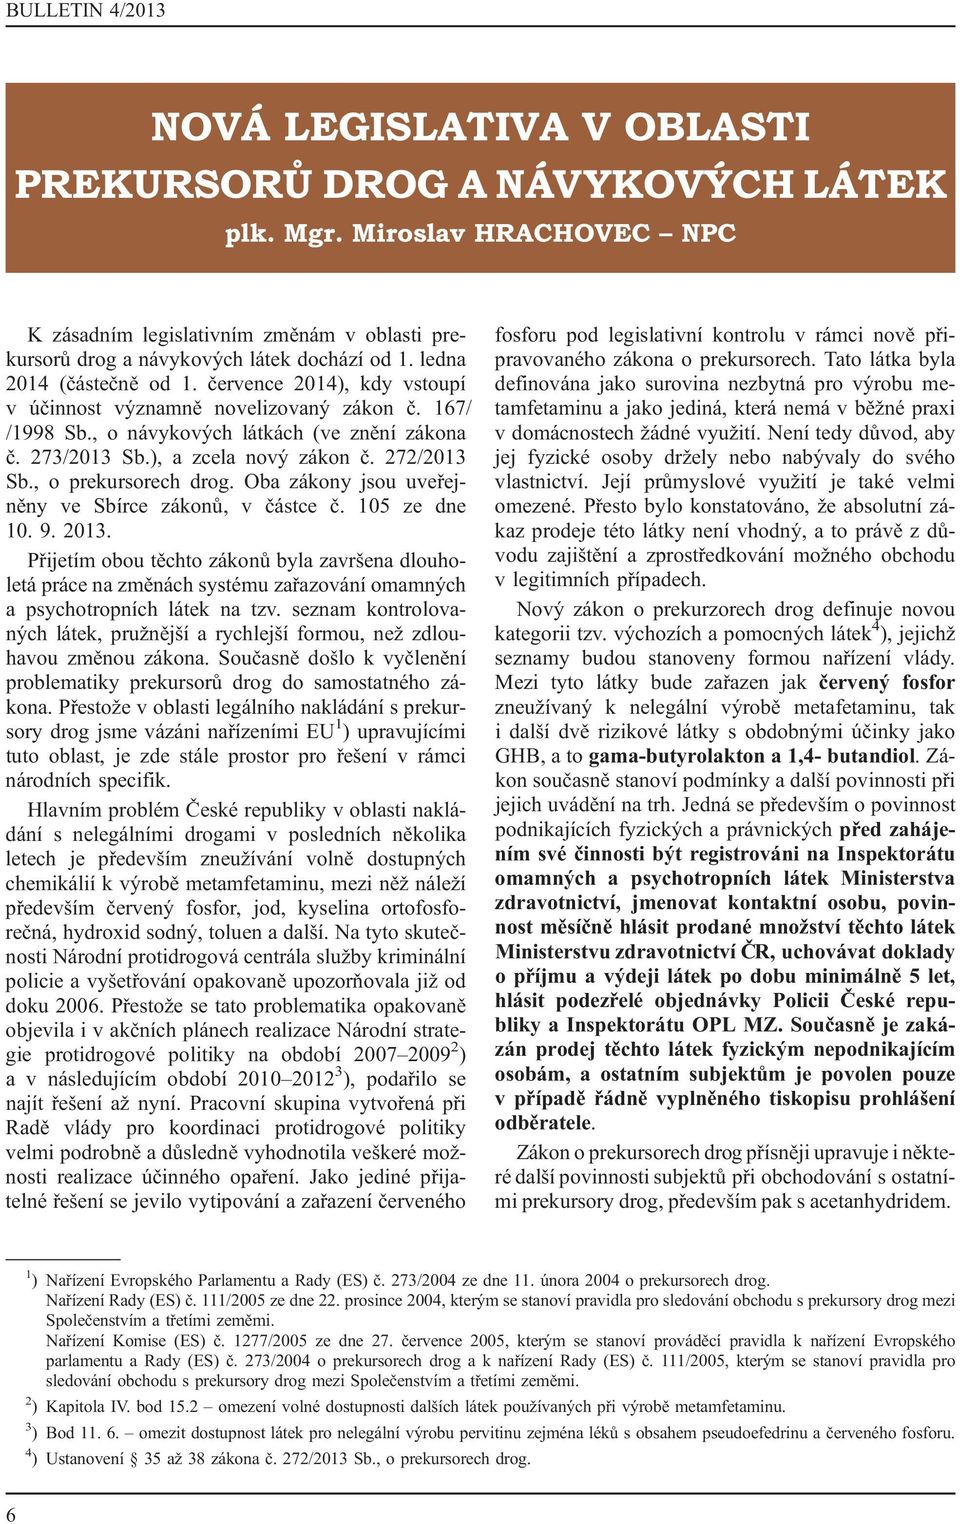 272/2013 Sb., o prekursorech drog. Oba zákony jsou uveřejněny ve Sbírce zákonů, v částce č. 105 ze dne 10. 9. 2013.